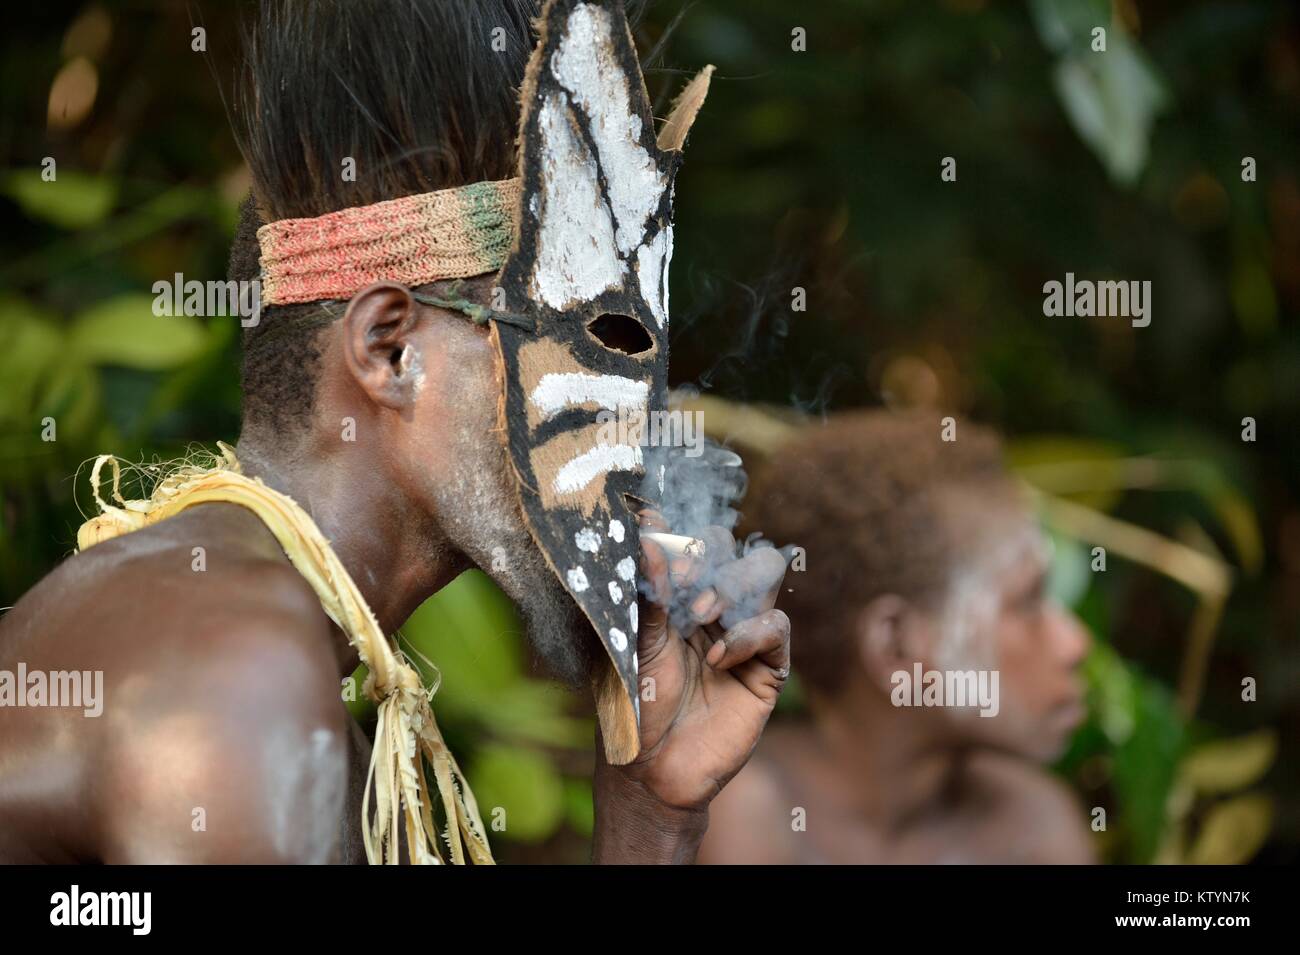 ATSY YOUW DORF, Bezirk, ASMAT REGION, IRIAN JAYA, Neuguinea, Indonesien - 23. MAI 2016: Porträt einer der Raucher aus dem Stamm der Asmat Menschen. Stockfoto